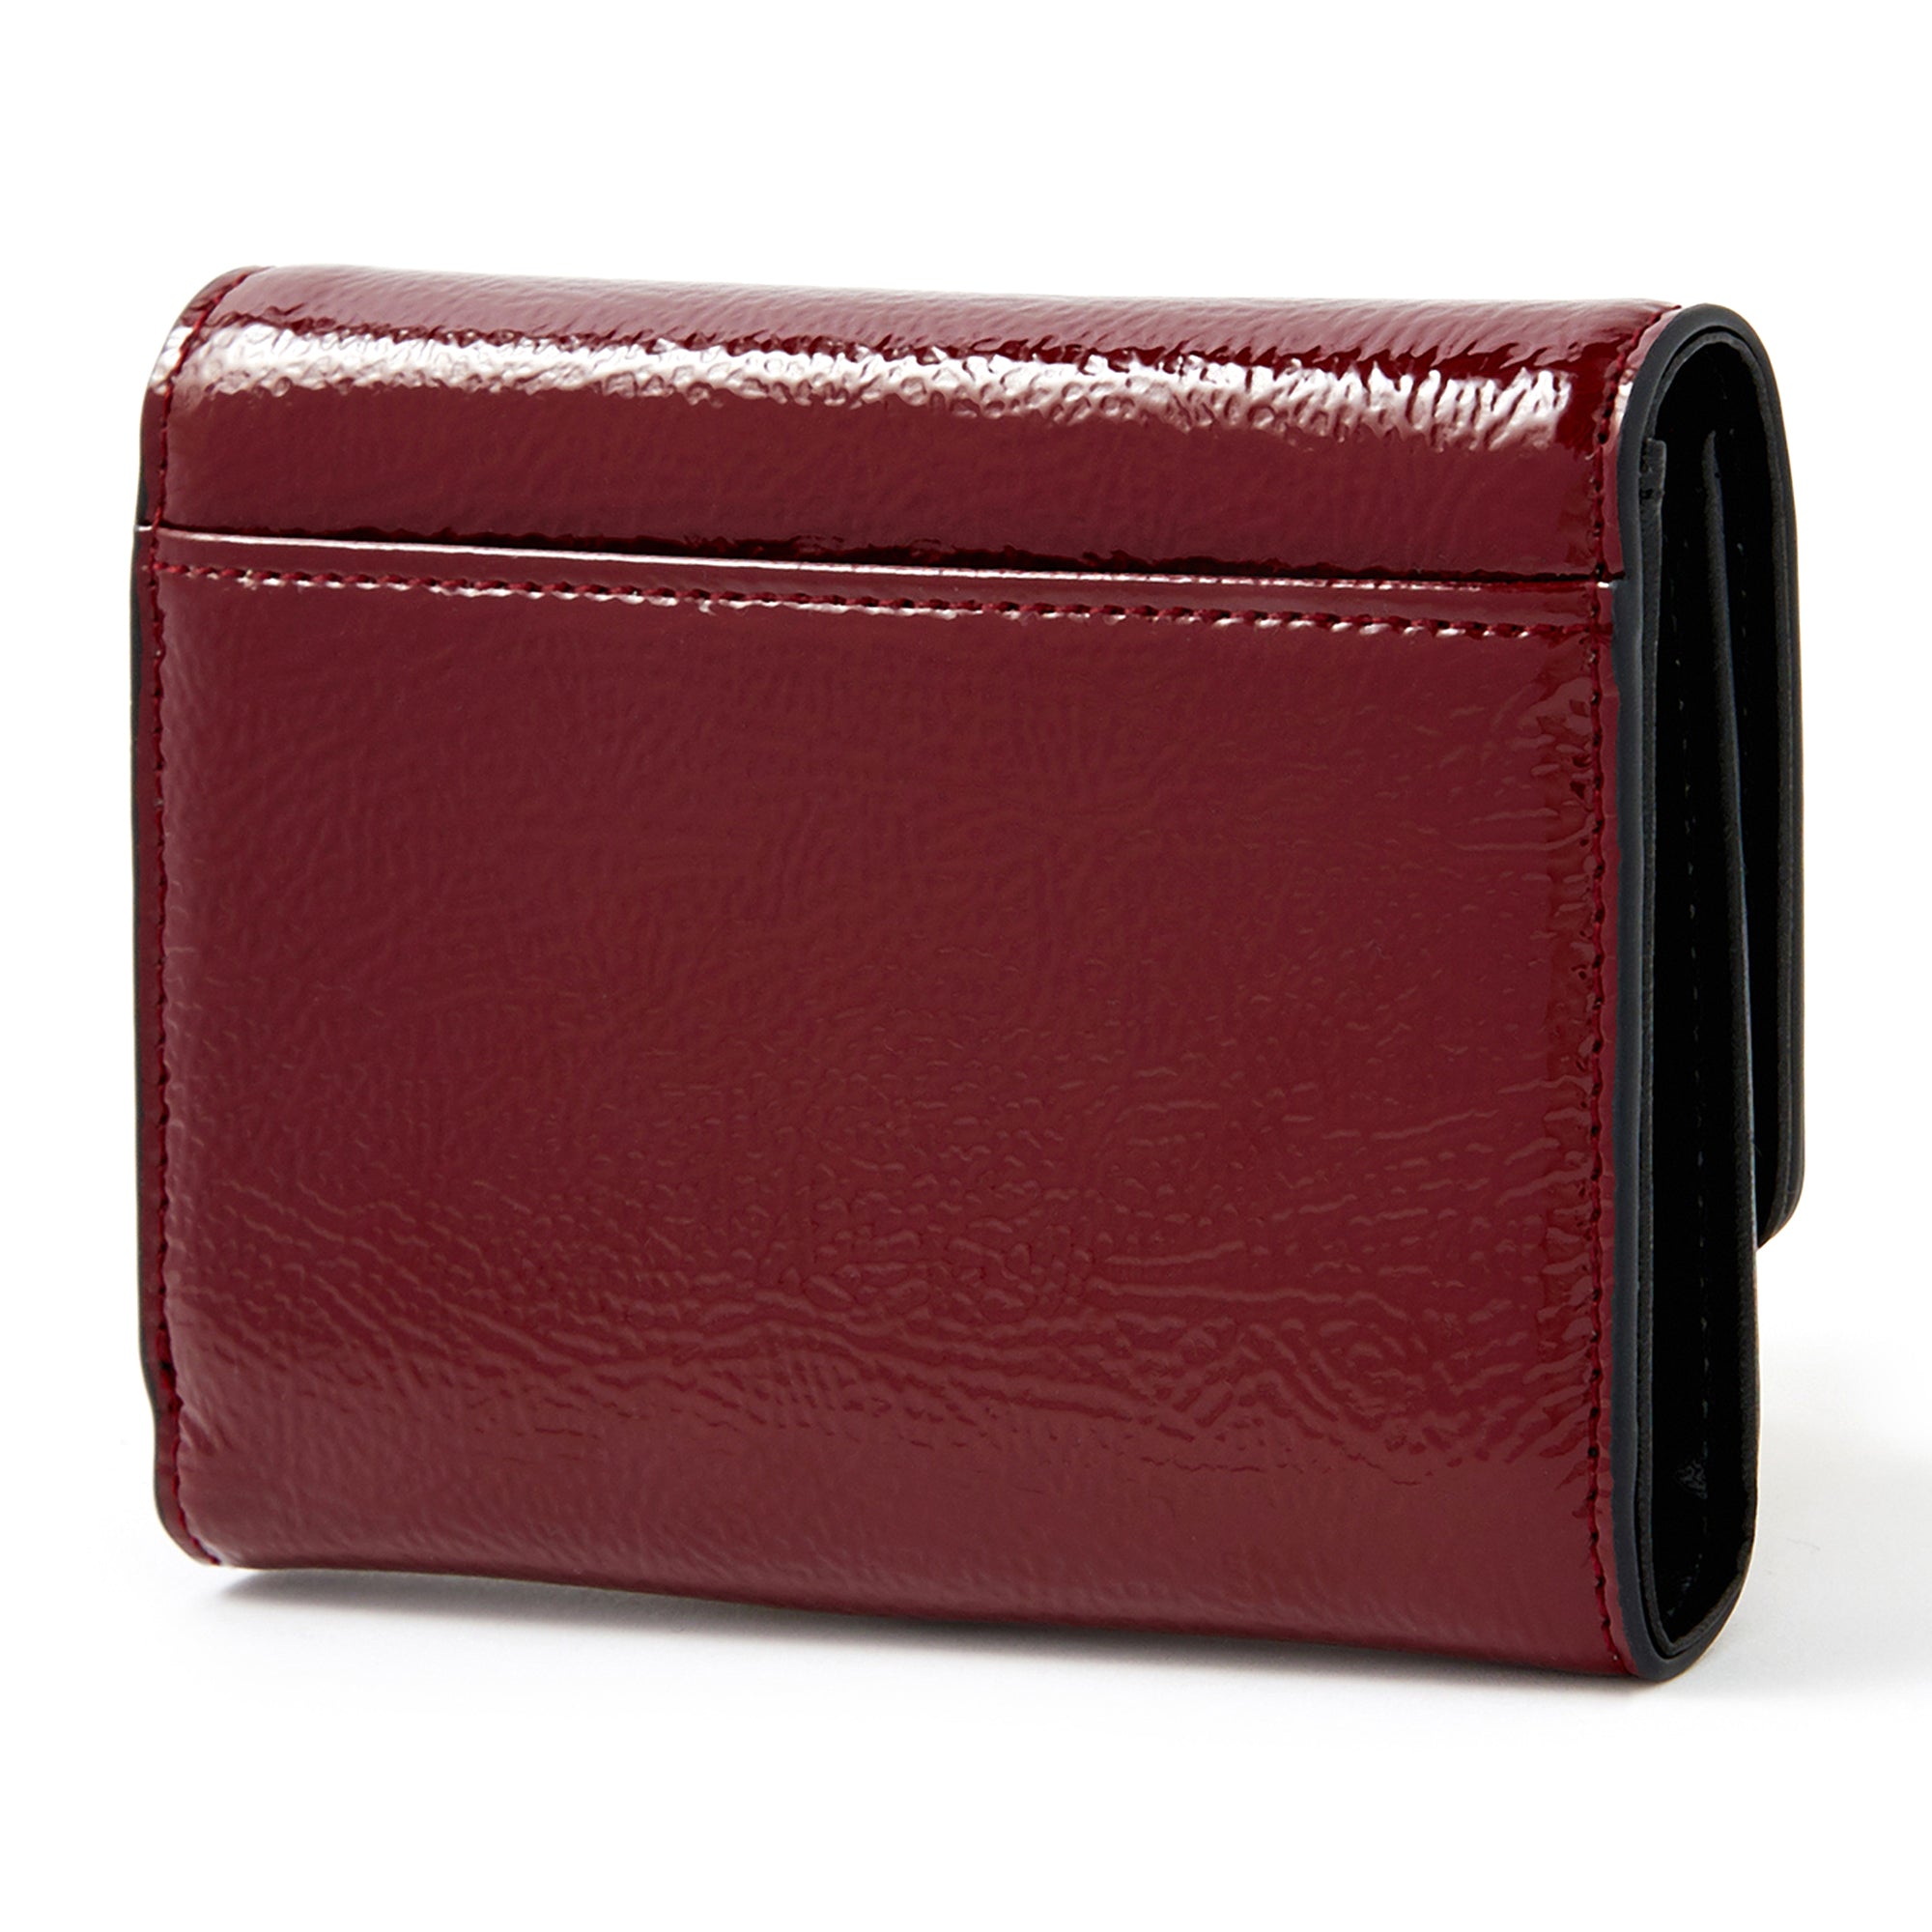 Buy Blue Wallet Hand Bag Online at Best Price at Global Desi- 8905134468479